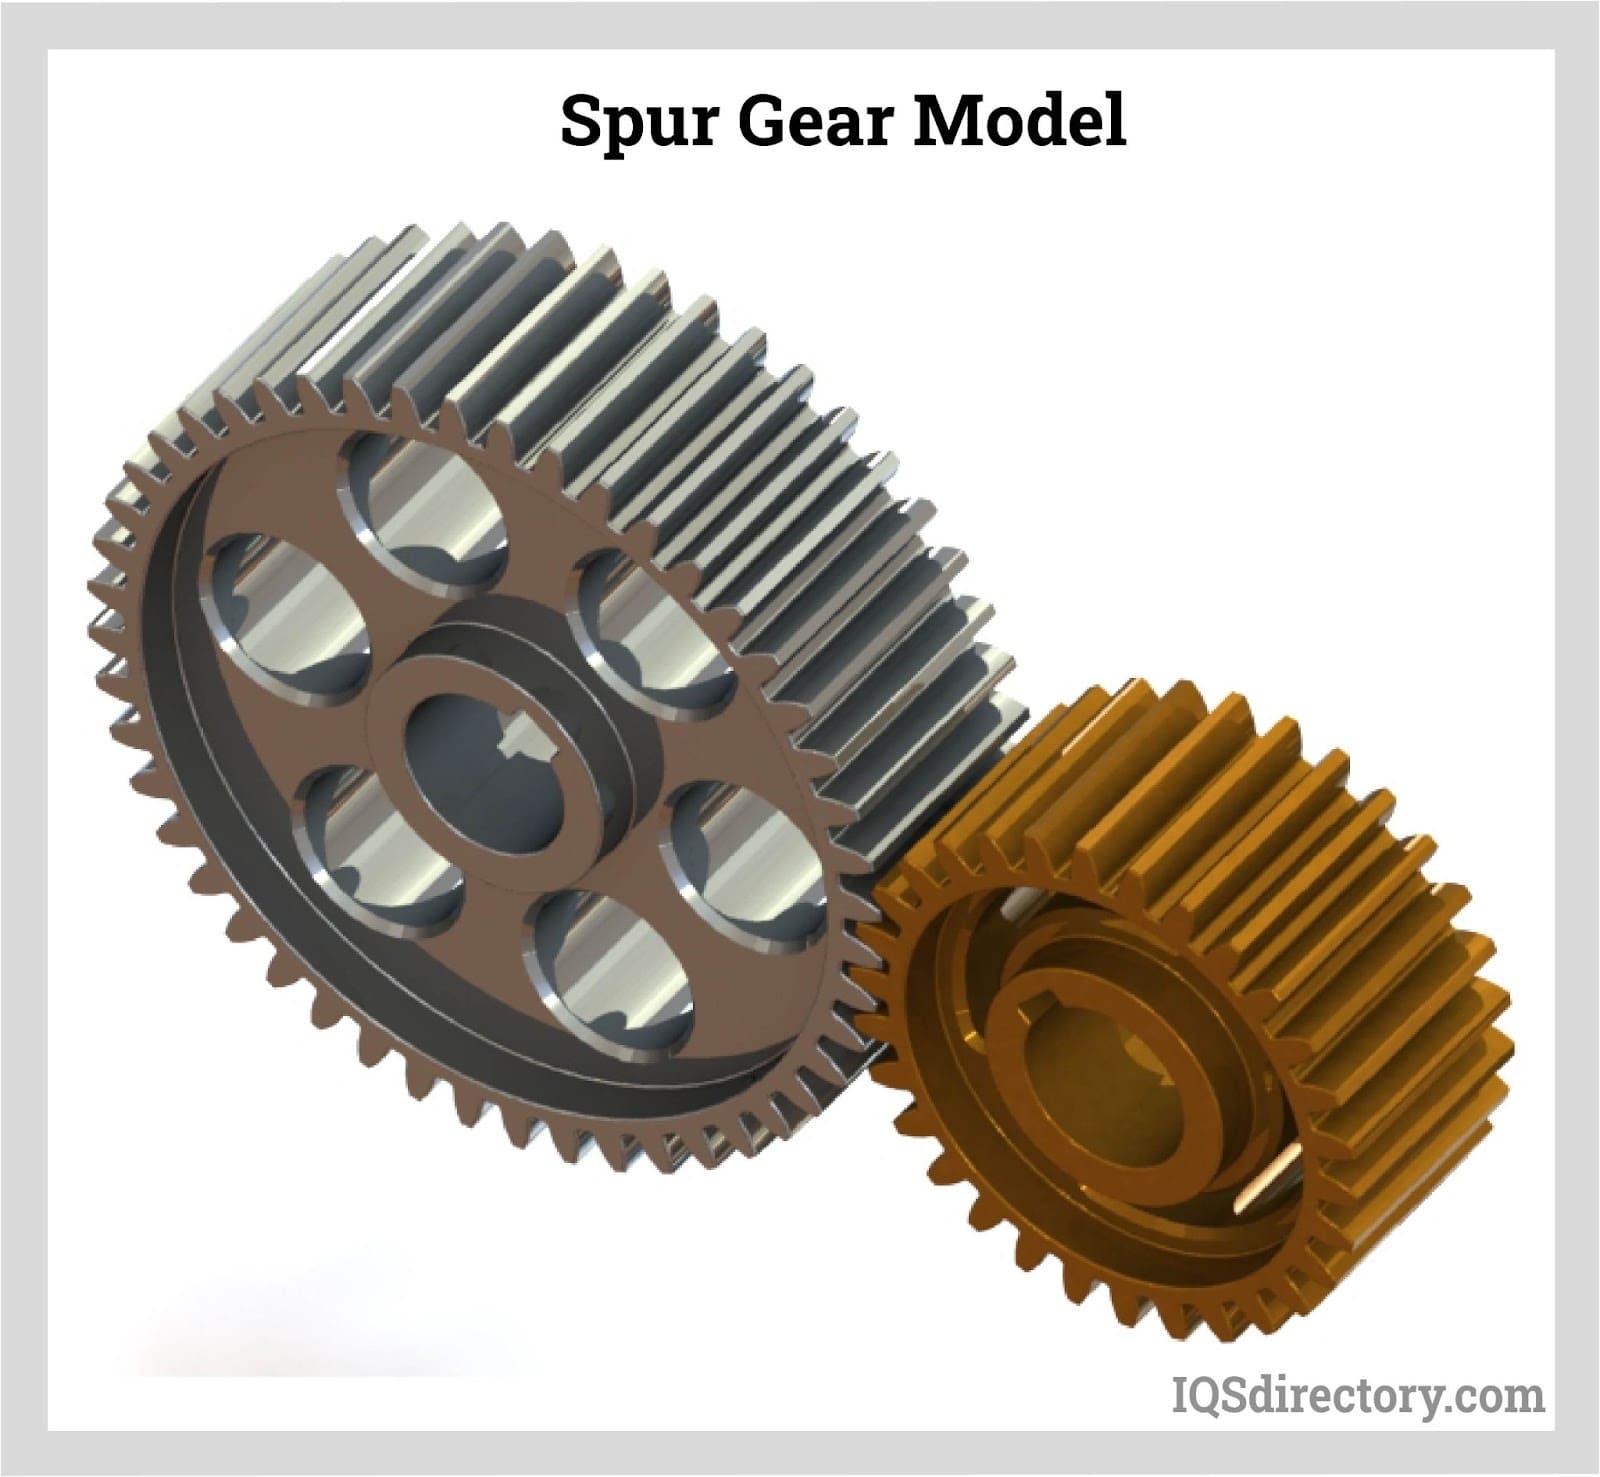 Spur Gear Model